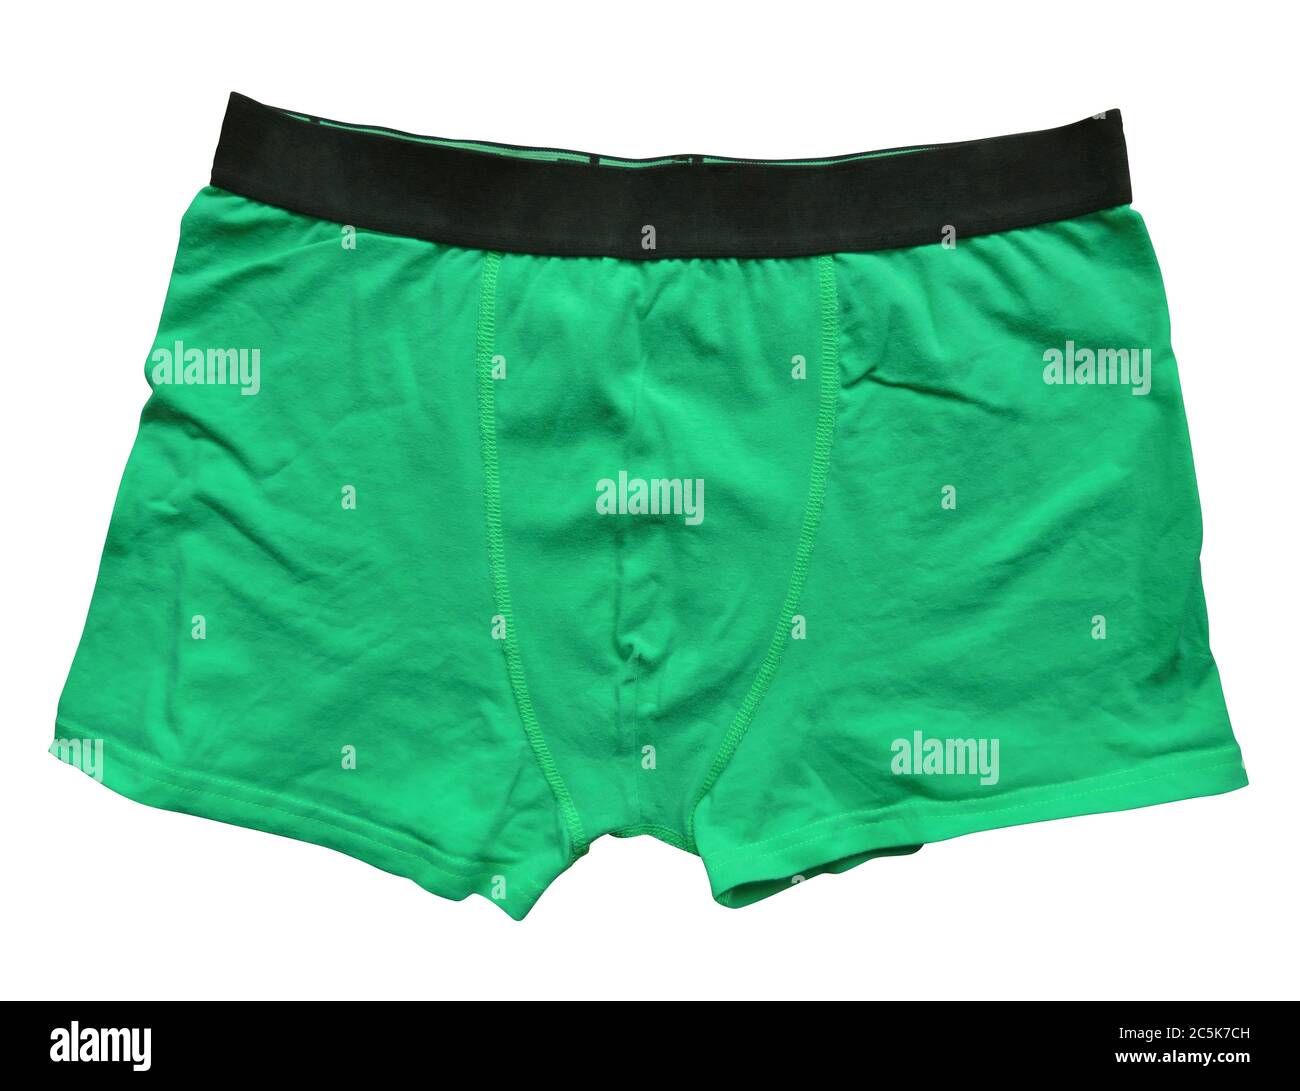 Grüne männliche Unterwäsche auf weißem Hintergrund isoliert. Beschneidungspfad enthalten. Stockfoto